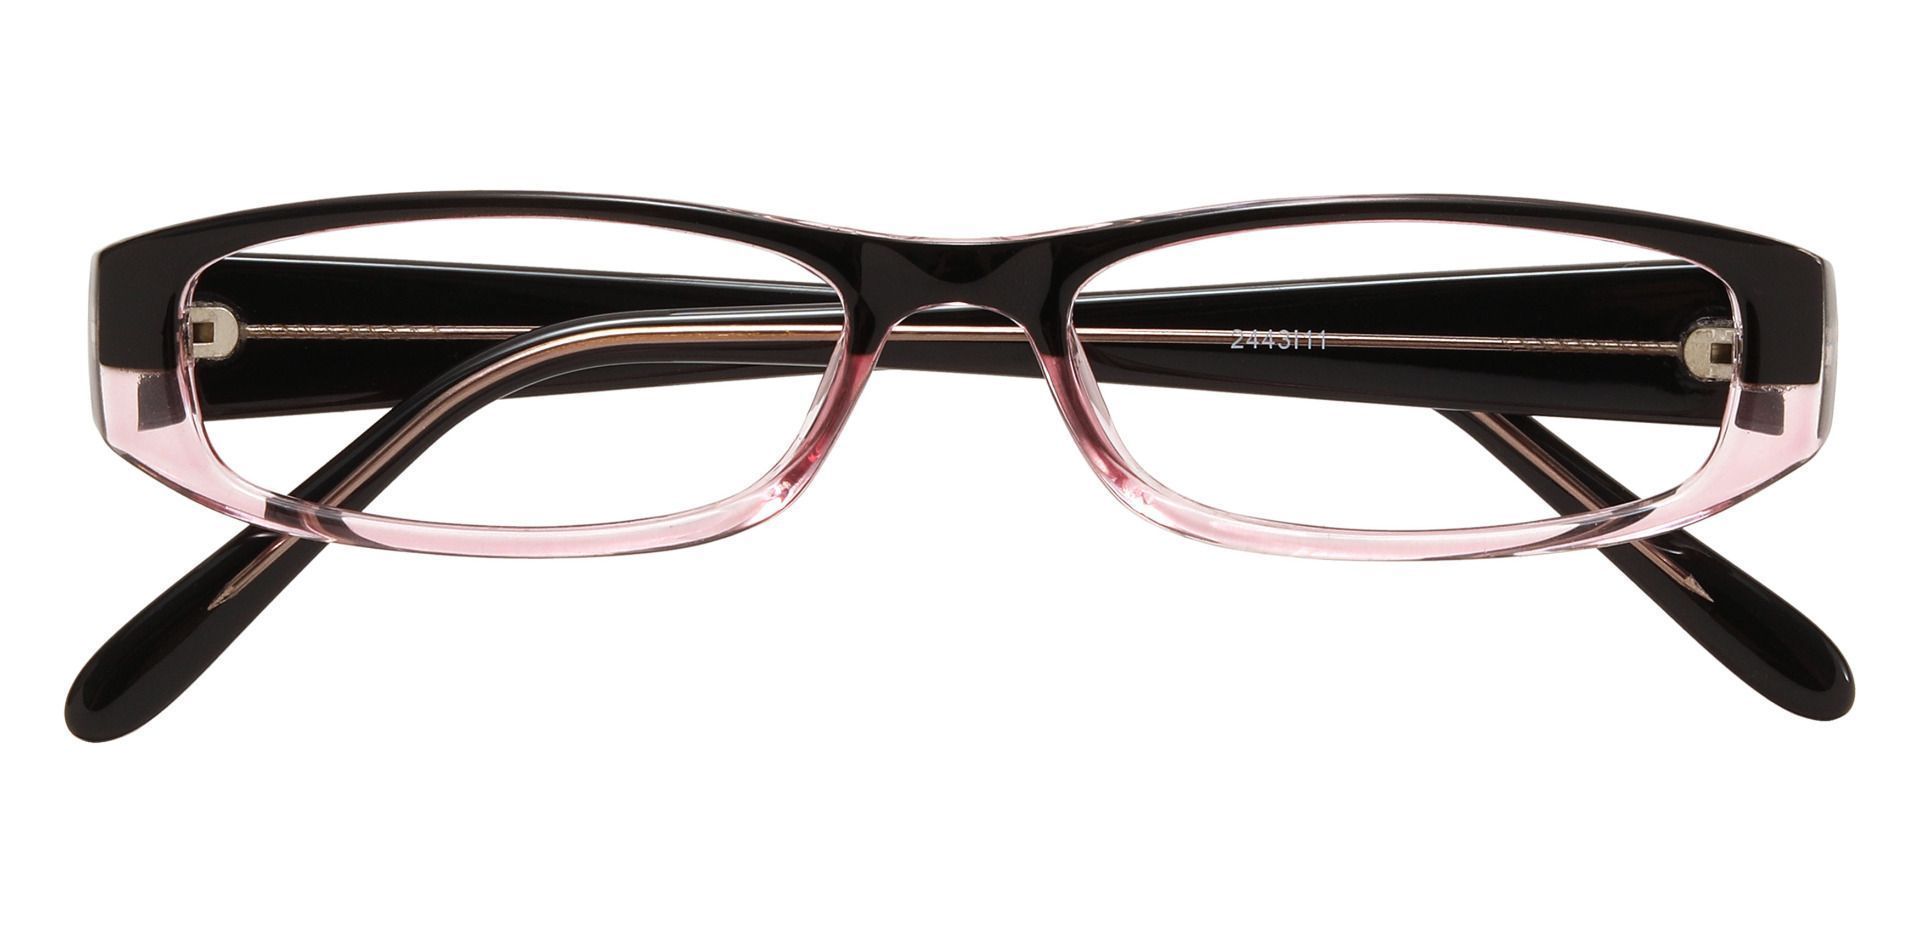 Elgin Rectangle Eyeglasses Frame - Pink